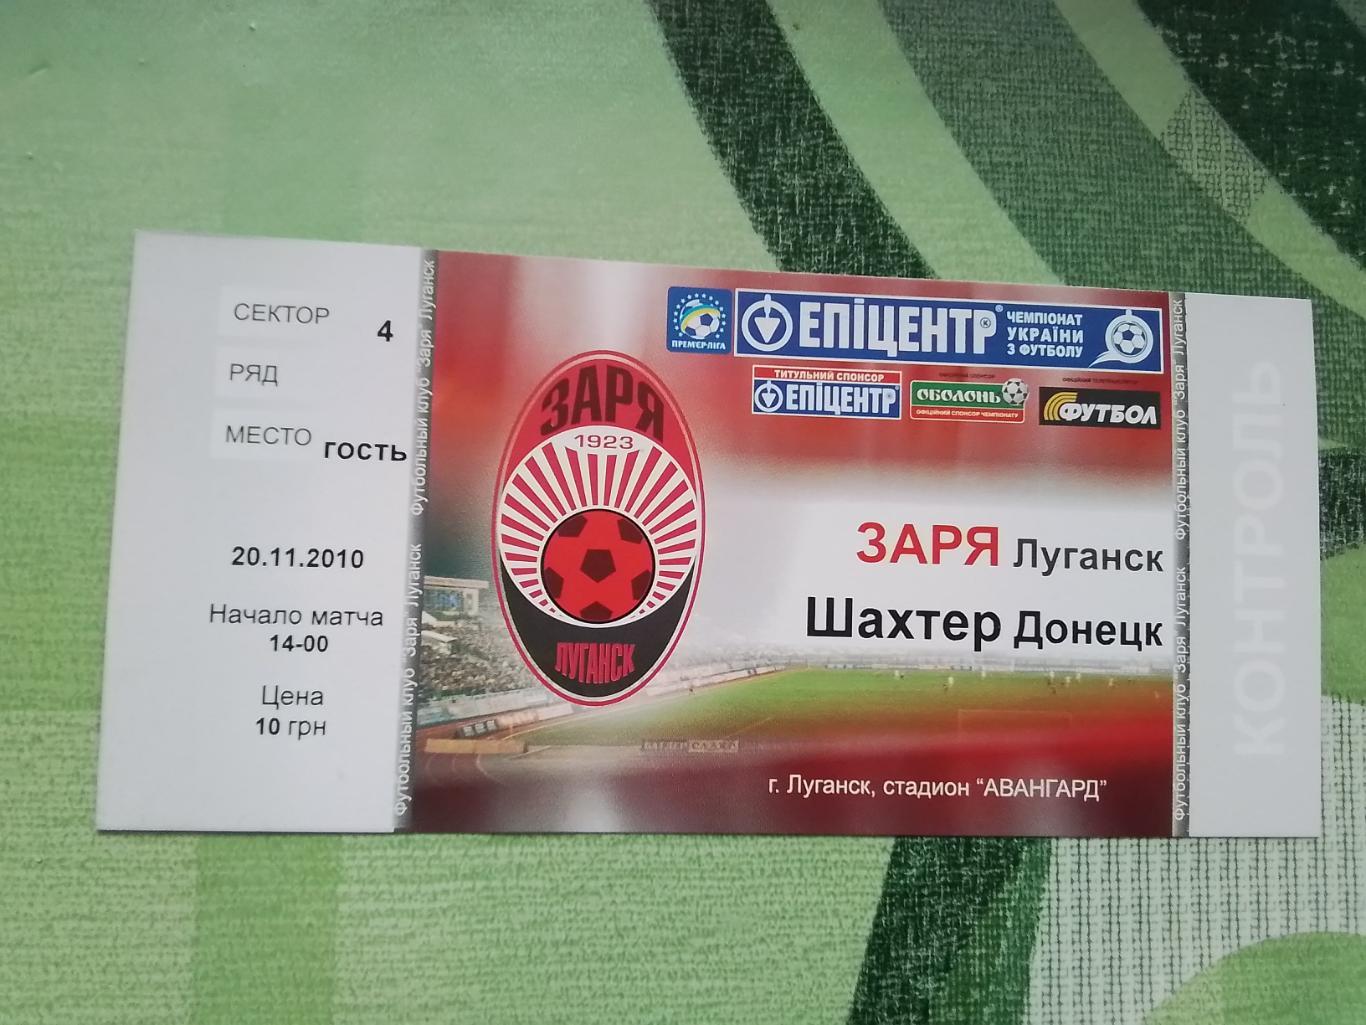 Билет Заря Луганск - Шахтер Донецк 2010 - 2011